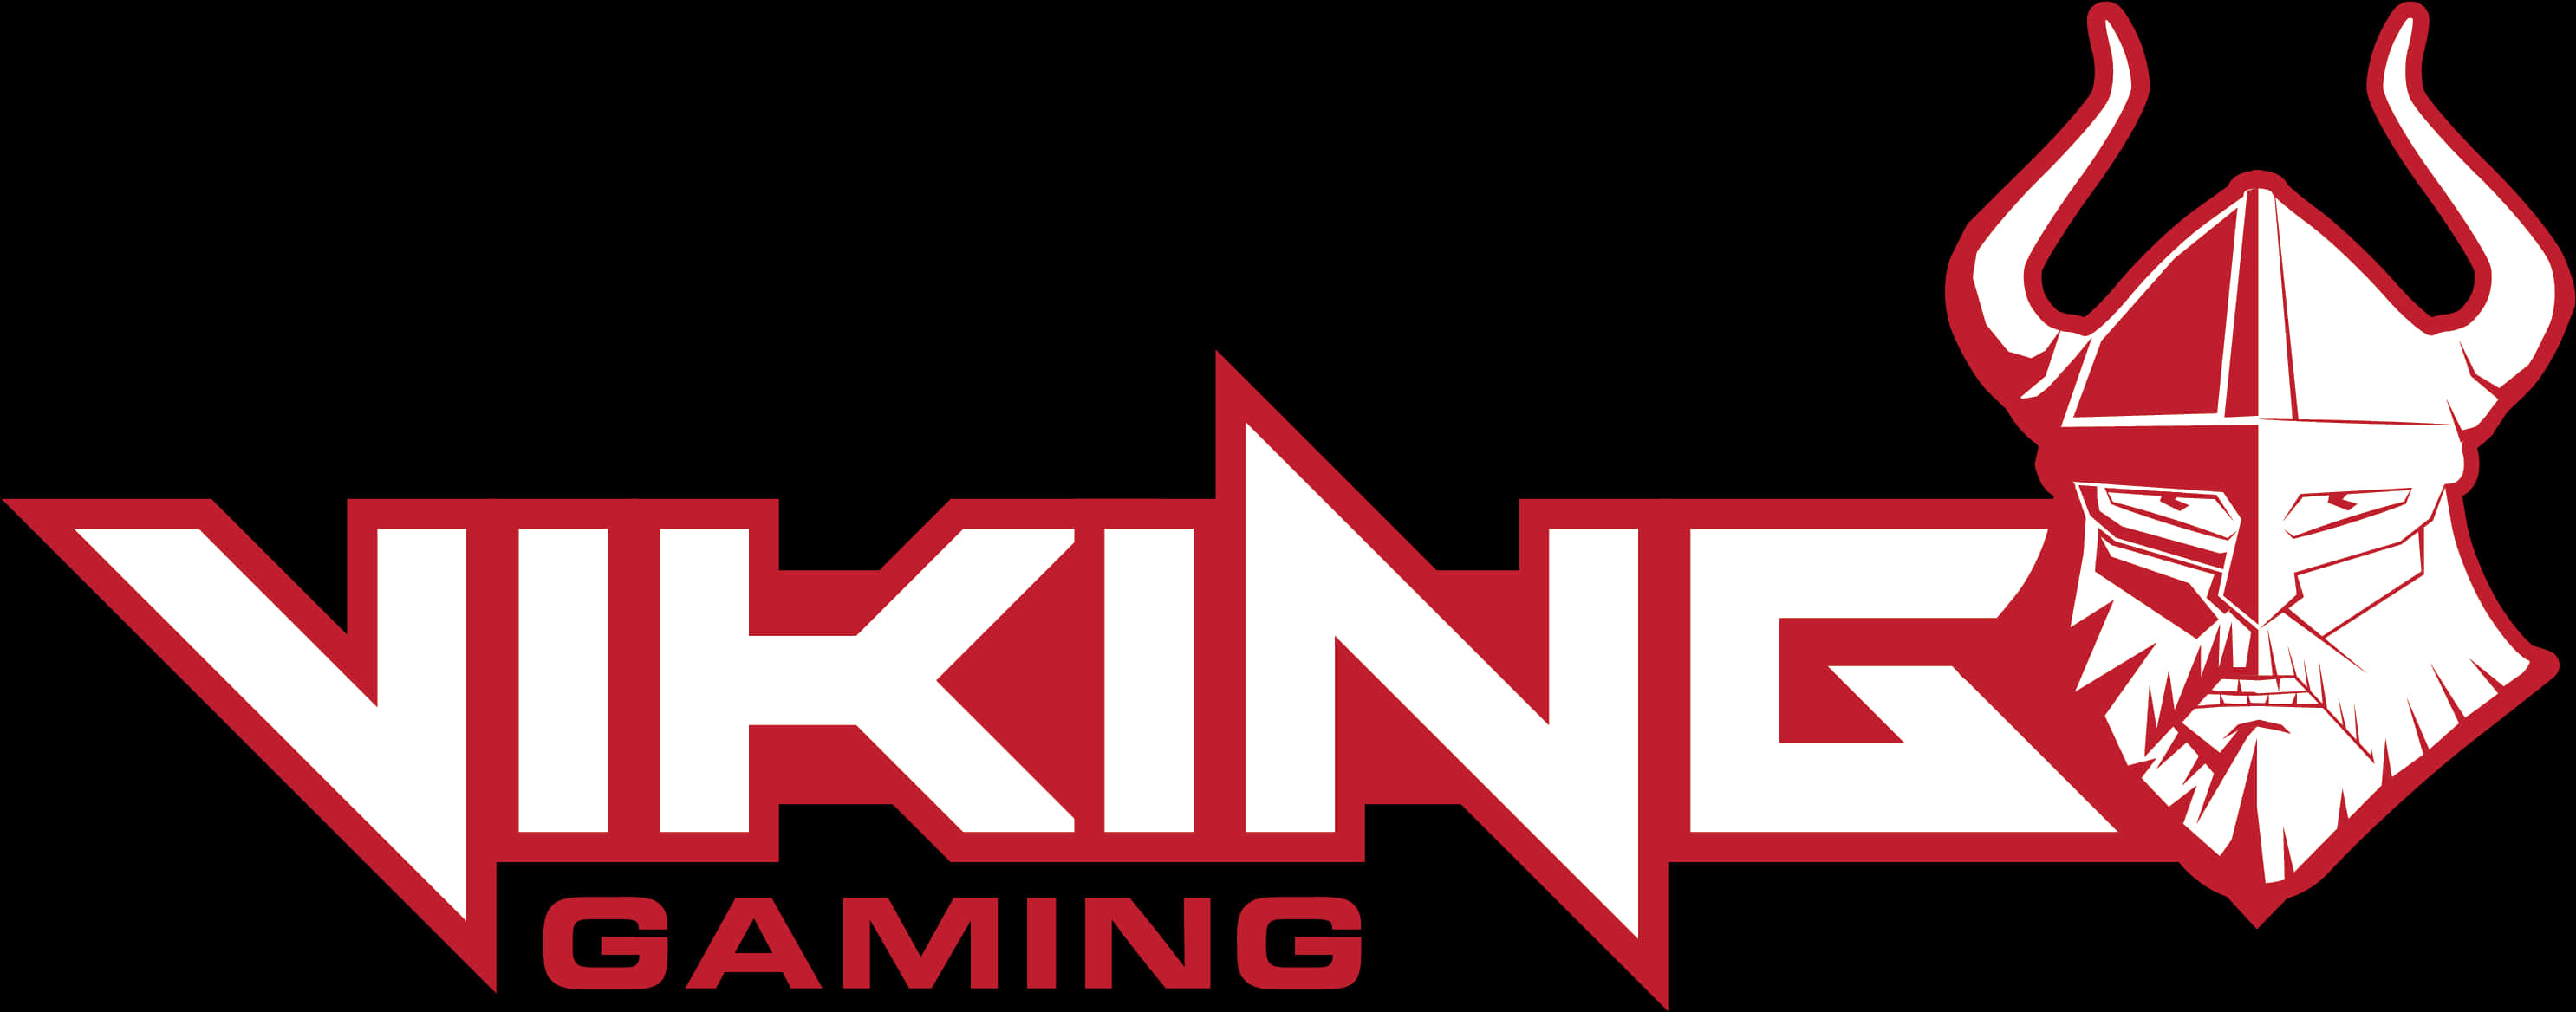 Viking In A Gamer Logo